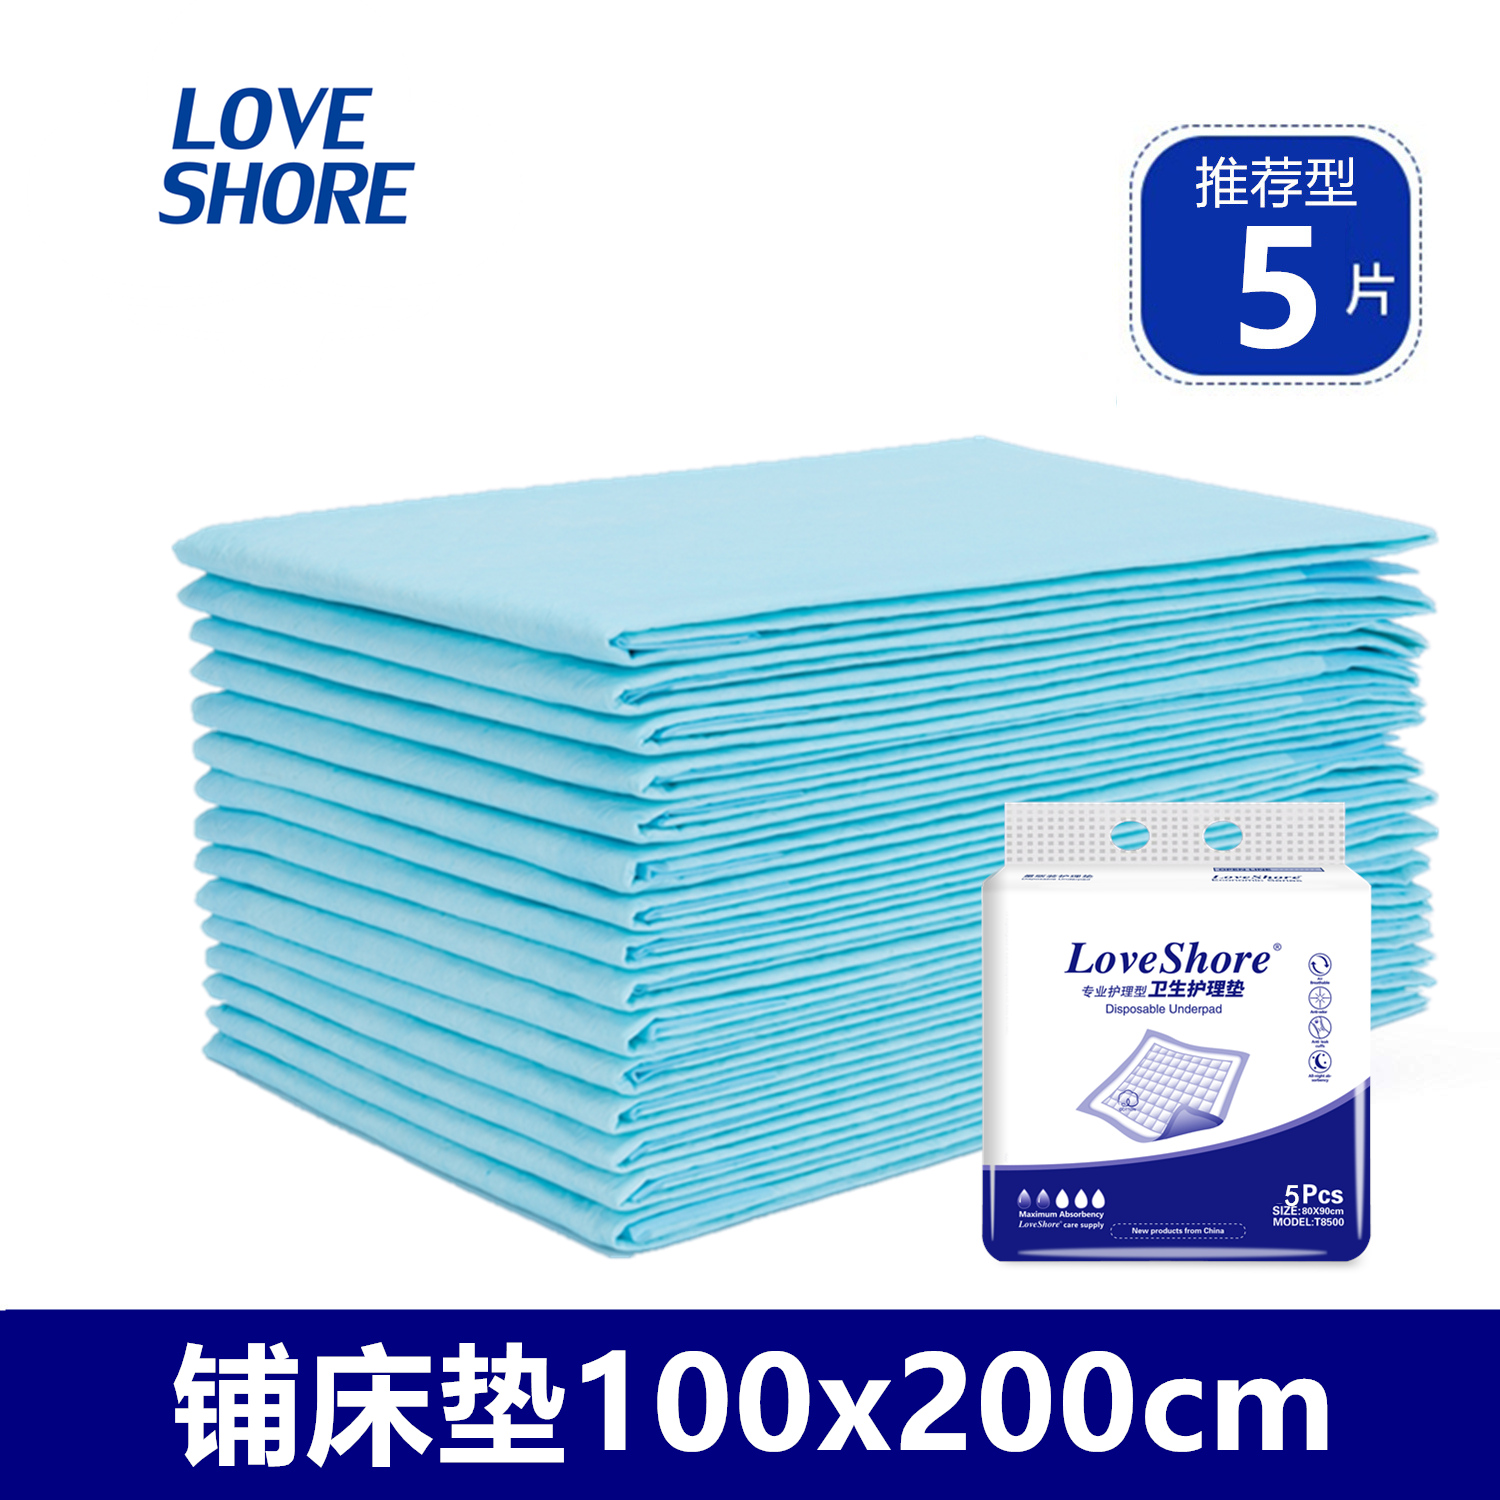 安怡孕妇产褥垫100X200产后护理垫 产妇专用一次性床单大号5片